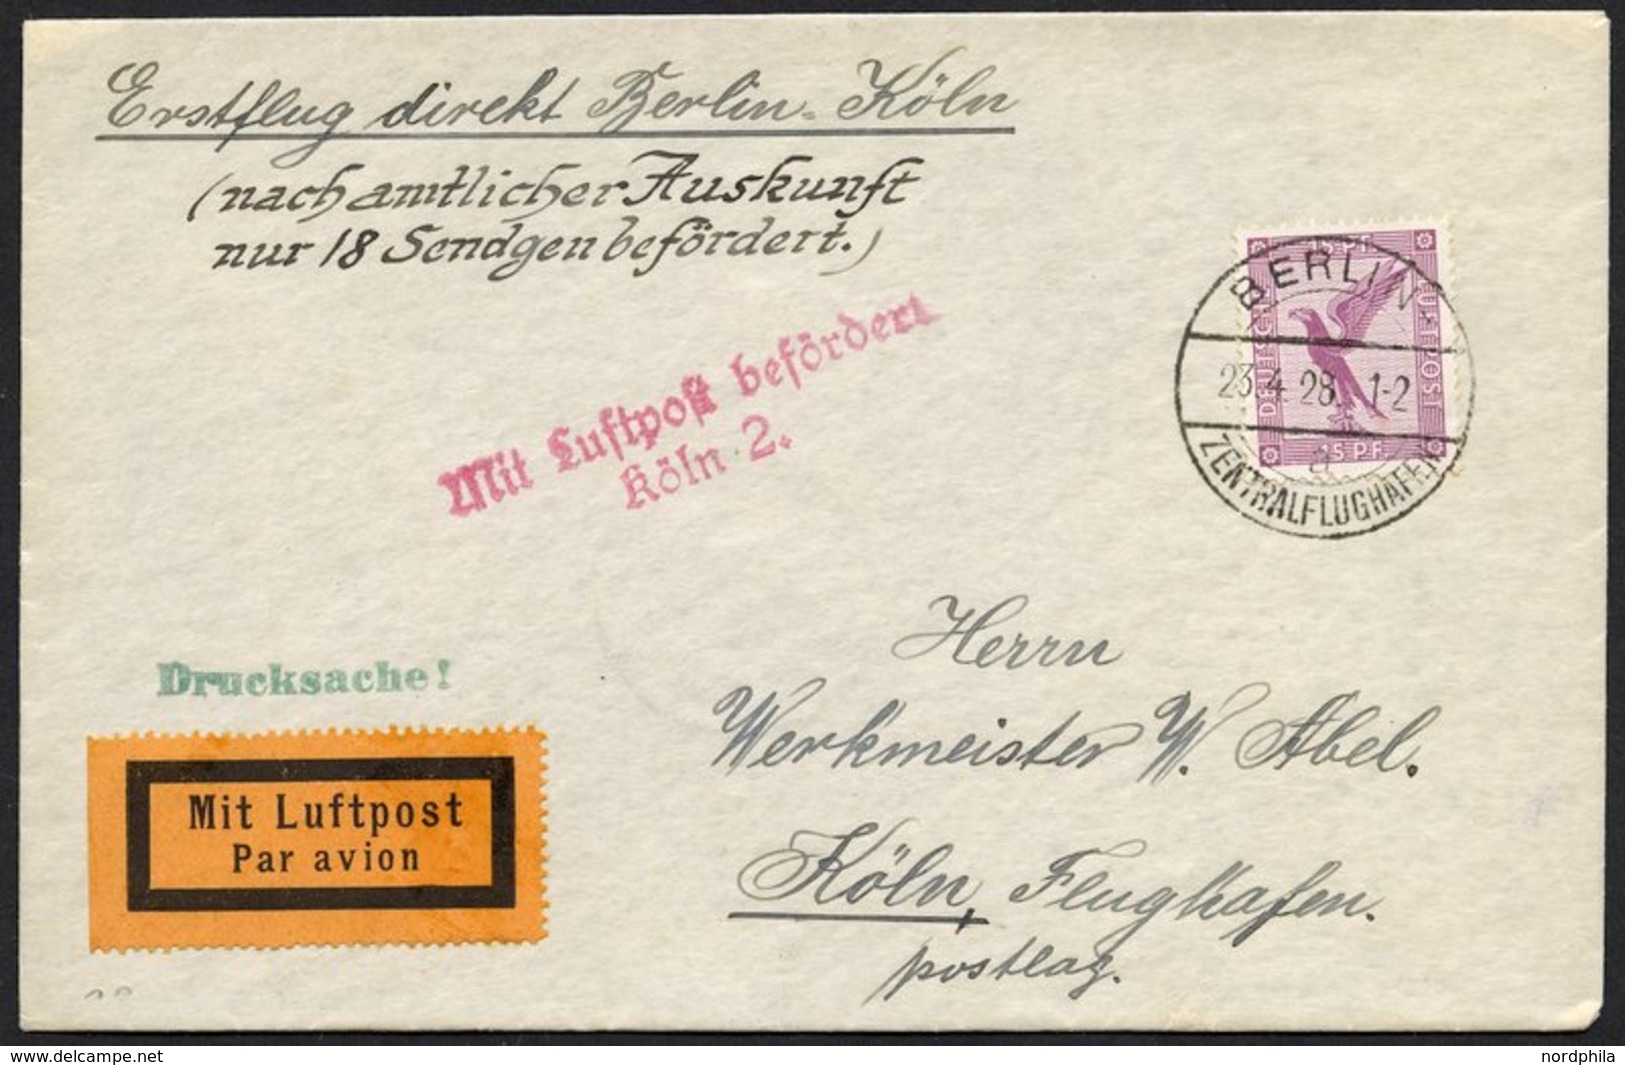 ERST-UND ERÖFFNUNGSFLÜGE 28.11.01 BRIEF, 23.4.1928, Berlin-Köln, Prachtbrief, R! - Zeppelines